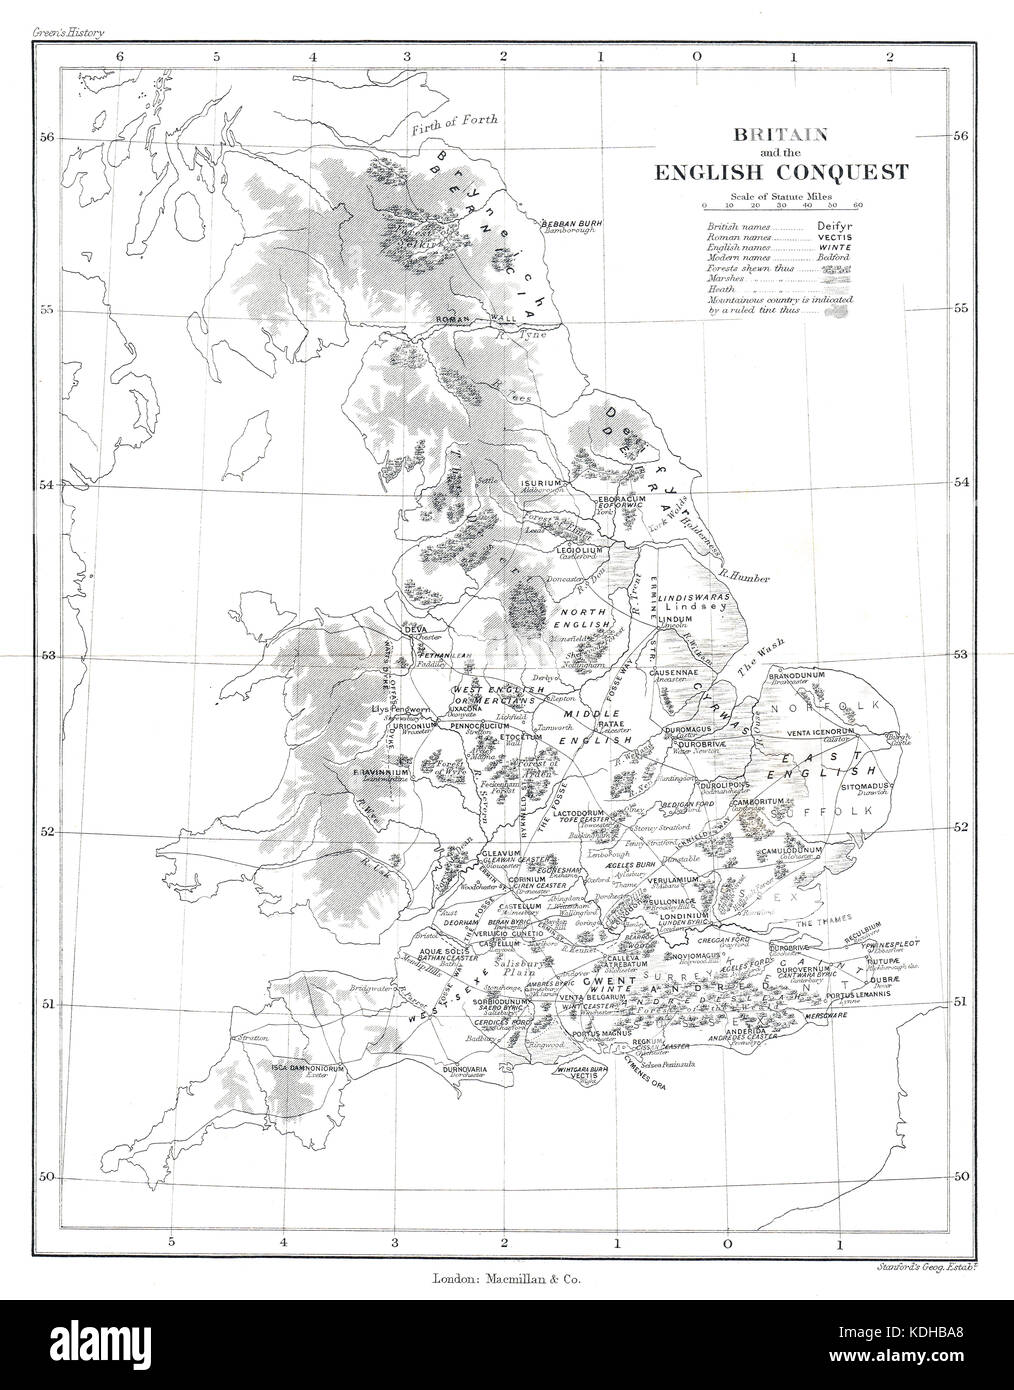 La carte d'Angleterre et la conquête anglaise. montrant l'évolution de la carte du pays après le départ des Romains et l'invasion par les angles au 5ème siècle. Banque D'Images